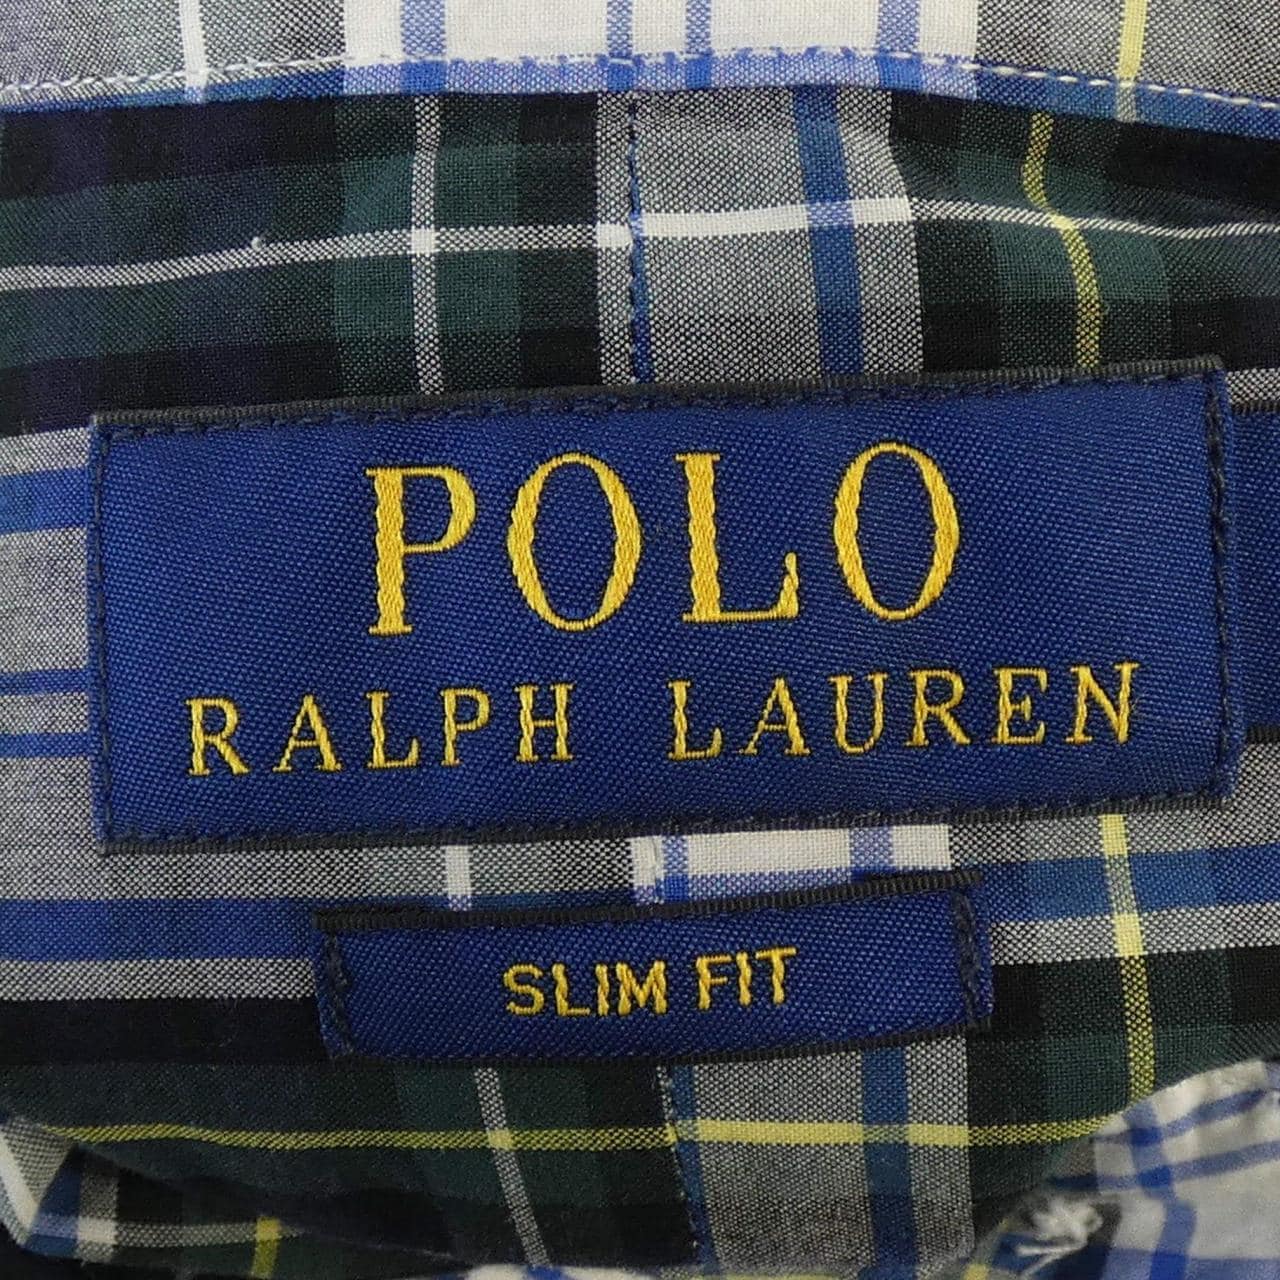 POLO LaLPH LAUREN衬衫